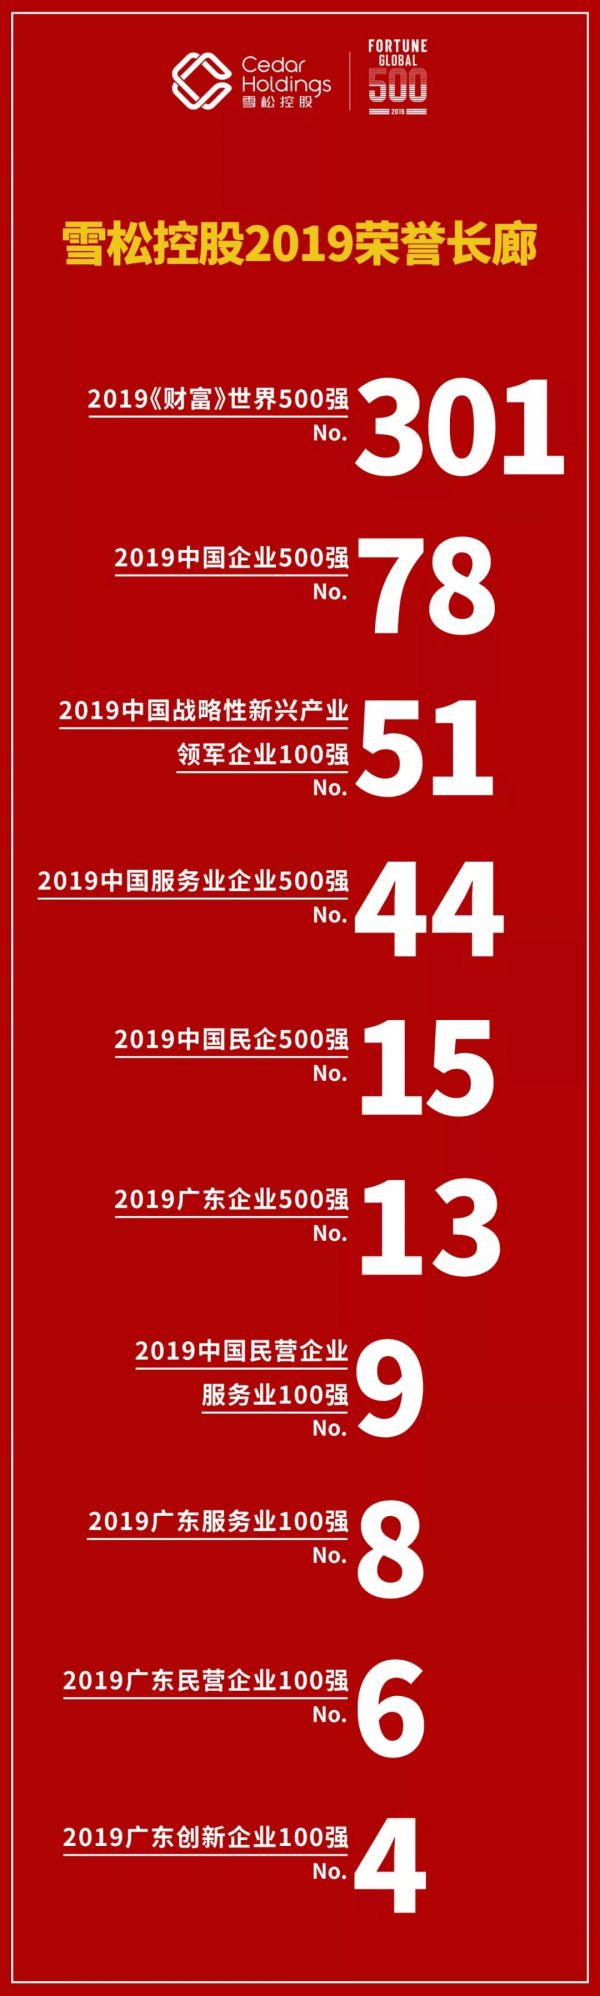 雪松控股上榜2019中国企业500强第78位6